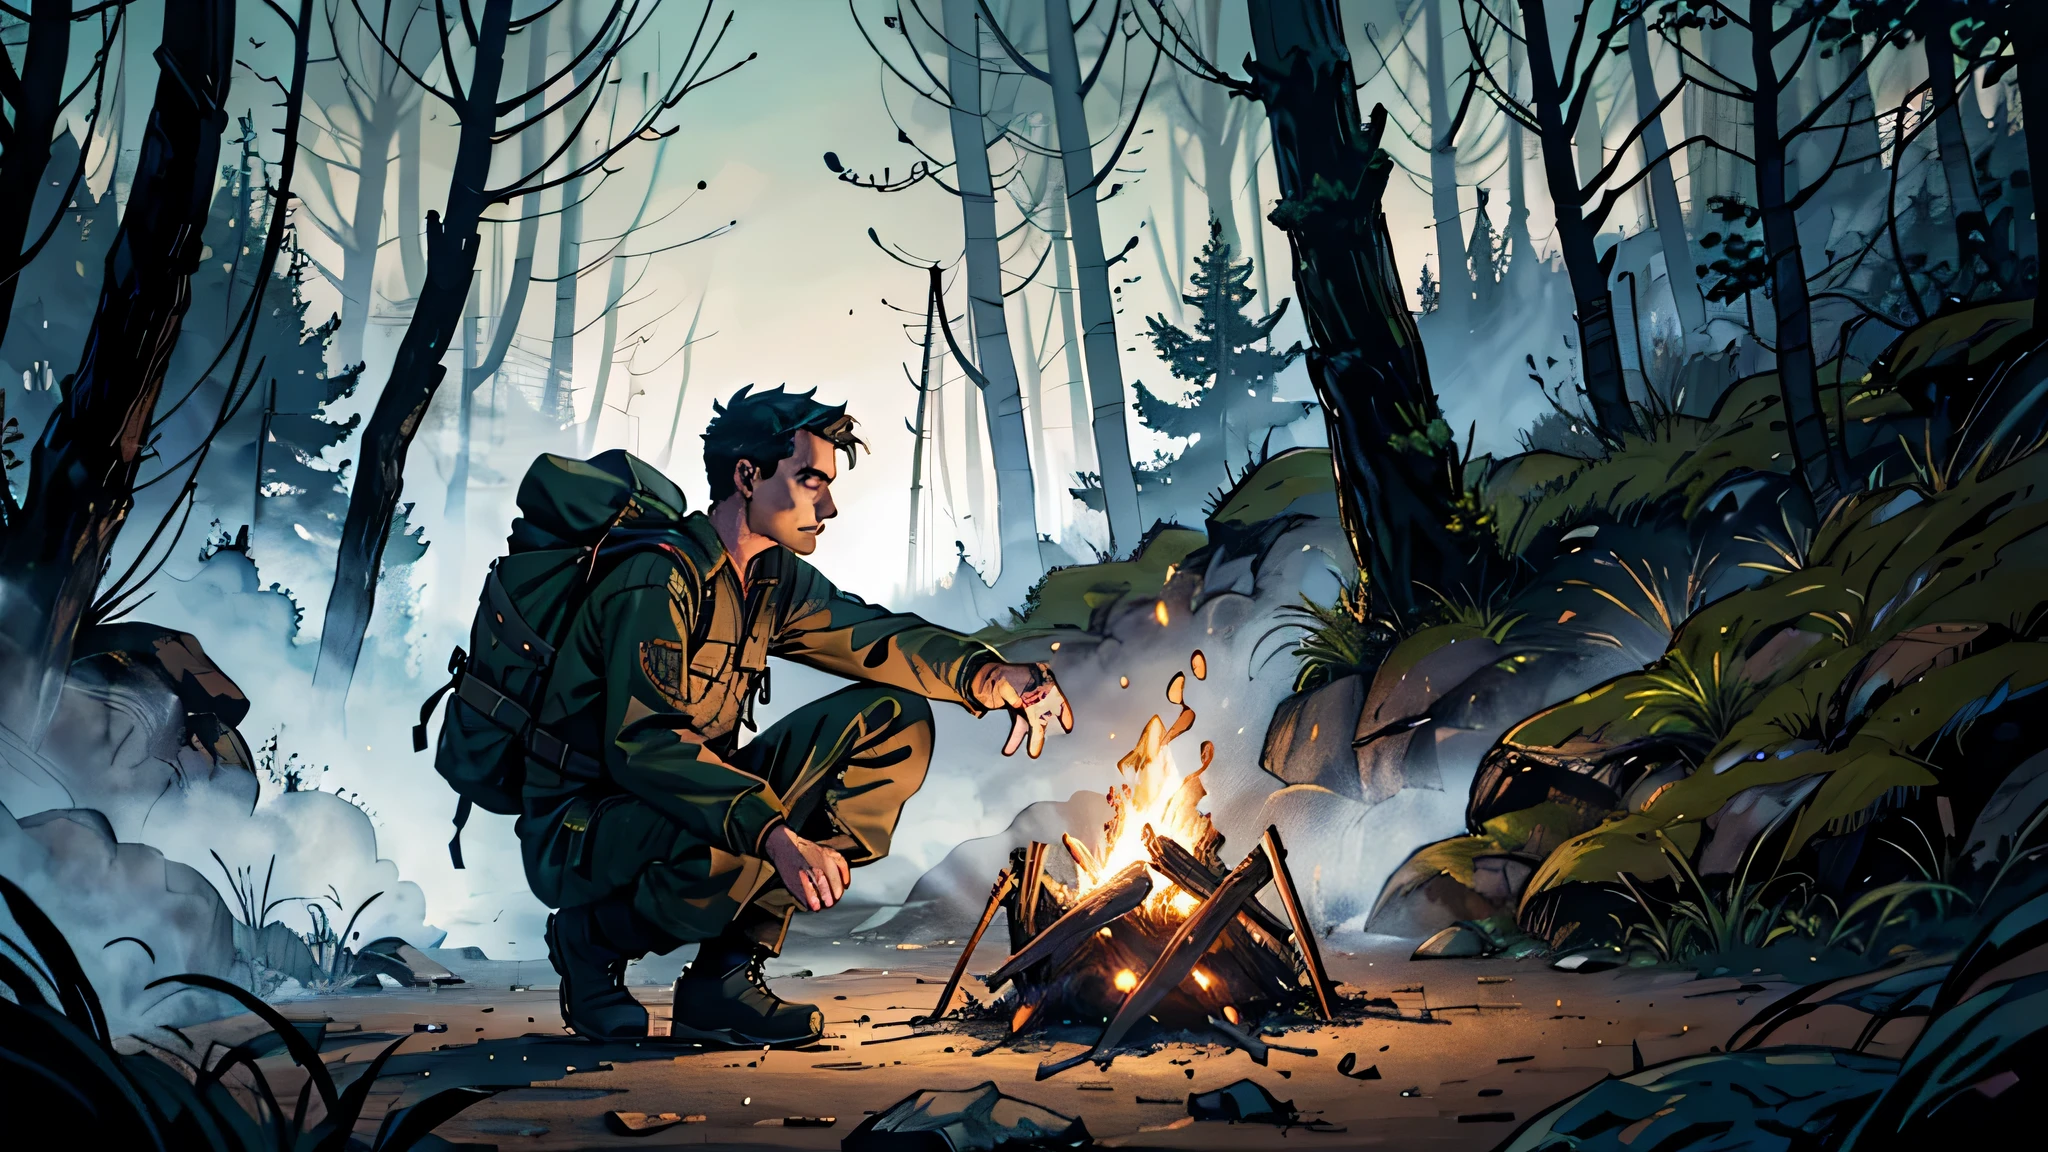 穿着露营服的男人, 黑色靴子和裤子, 深绿色长衬衫和蓝色背包，在树木茂密的森林中，篝火在夜间和险恶的环境中燃烧着红色色调.